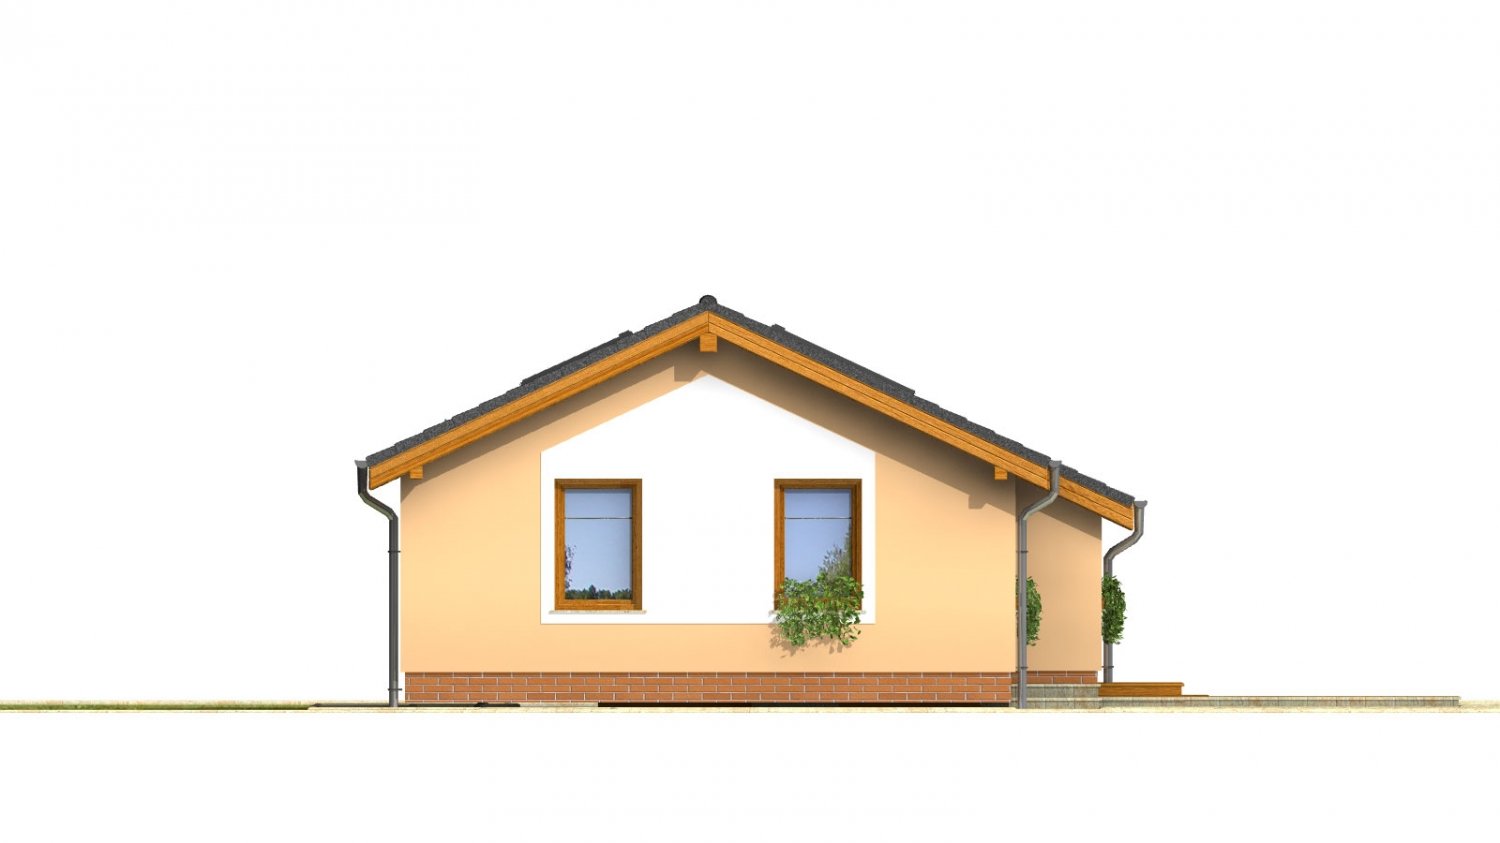 projekt pre lacný úzky dom na malý pozemok so sedlovou strechou, presvetlený strešnými oknami 